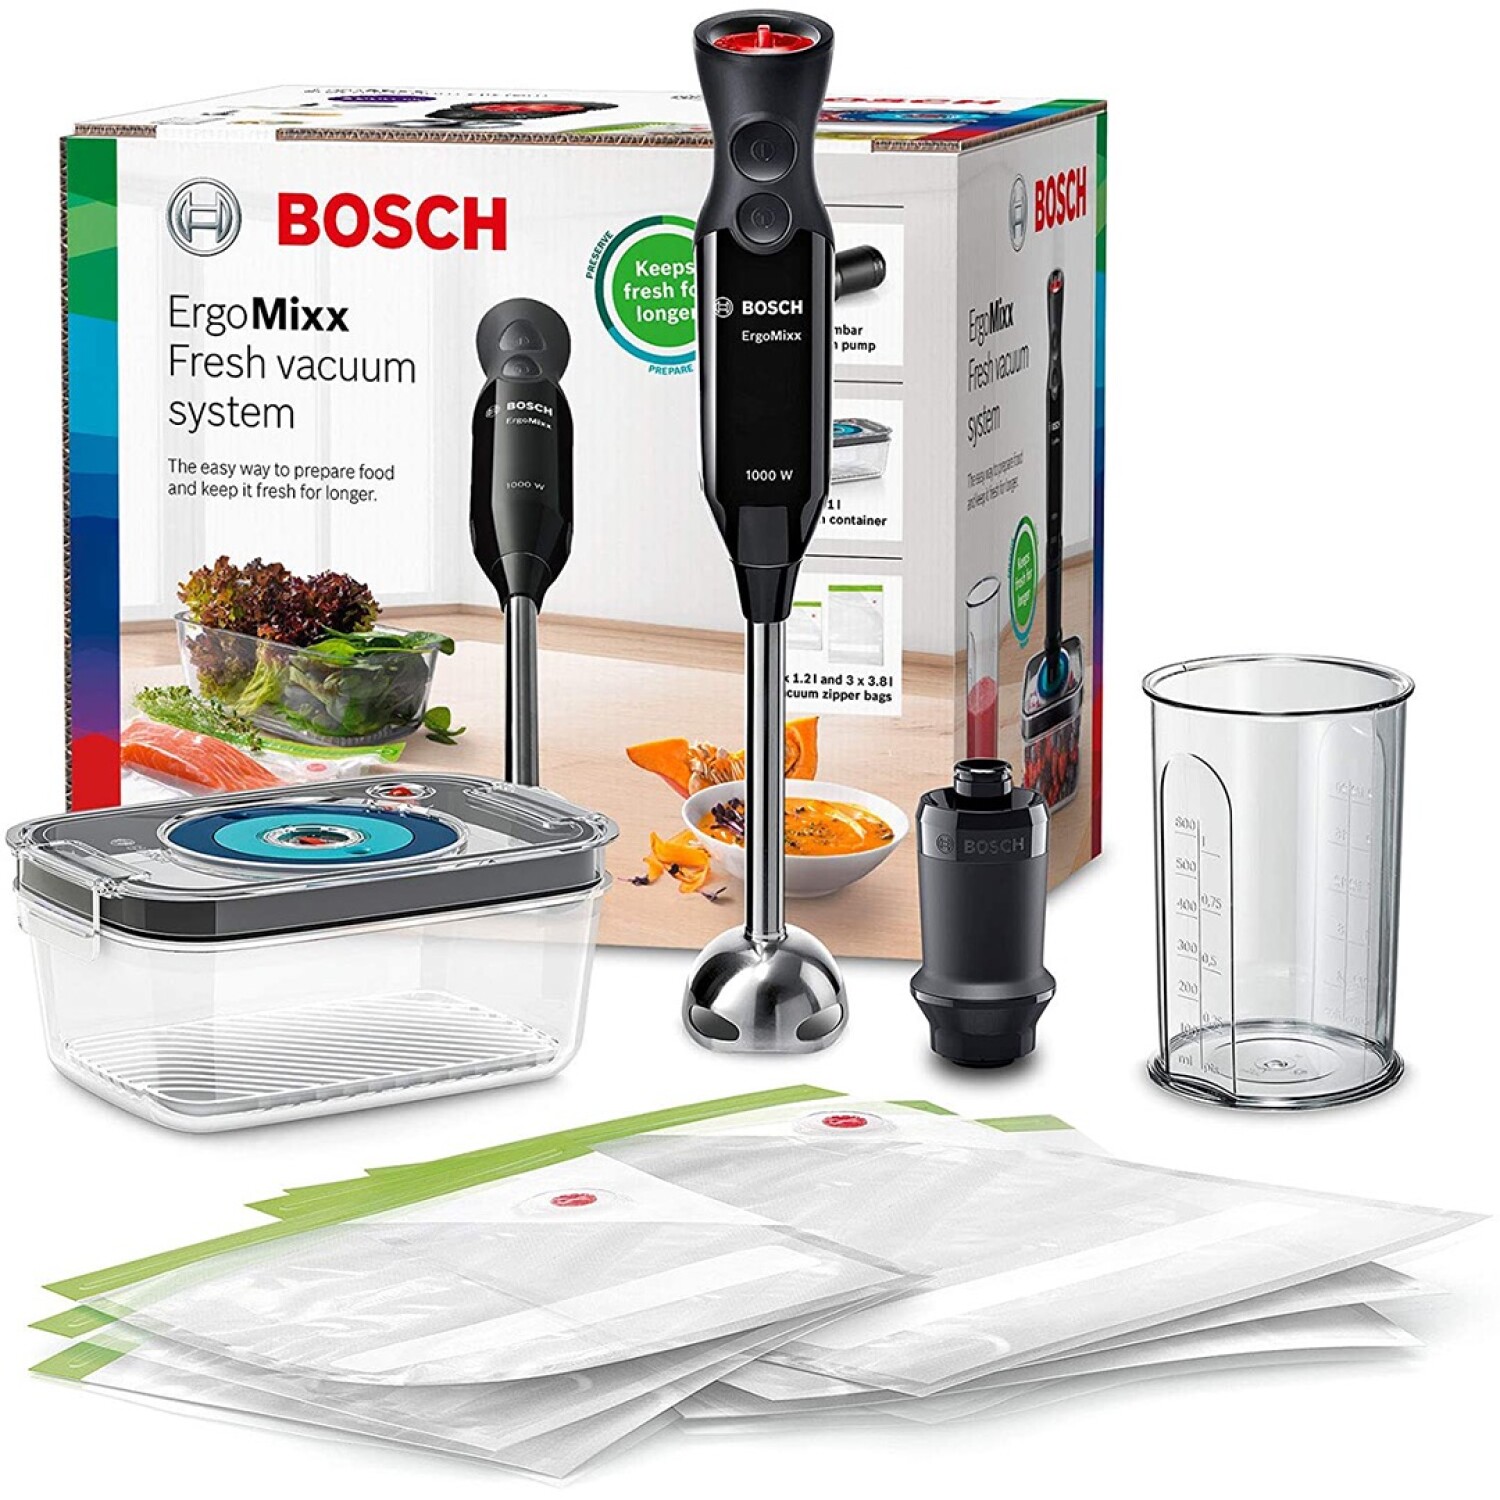 Degentek Bolivia Electrodomésticos Bosch - El microondas integrable Bosch  te ahorra espacio en la cocina y también es muy fácil de usar, gracias a su  aro de control central y los símbolos